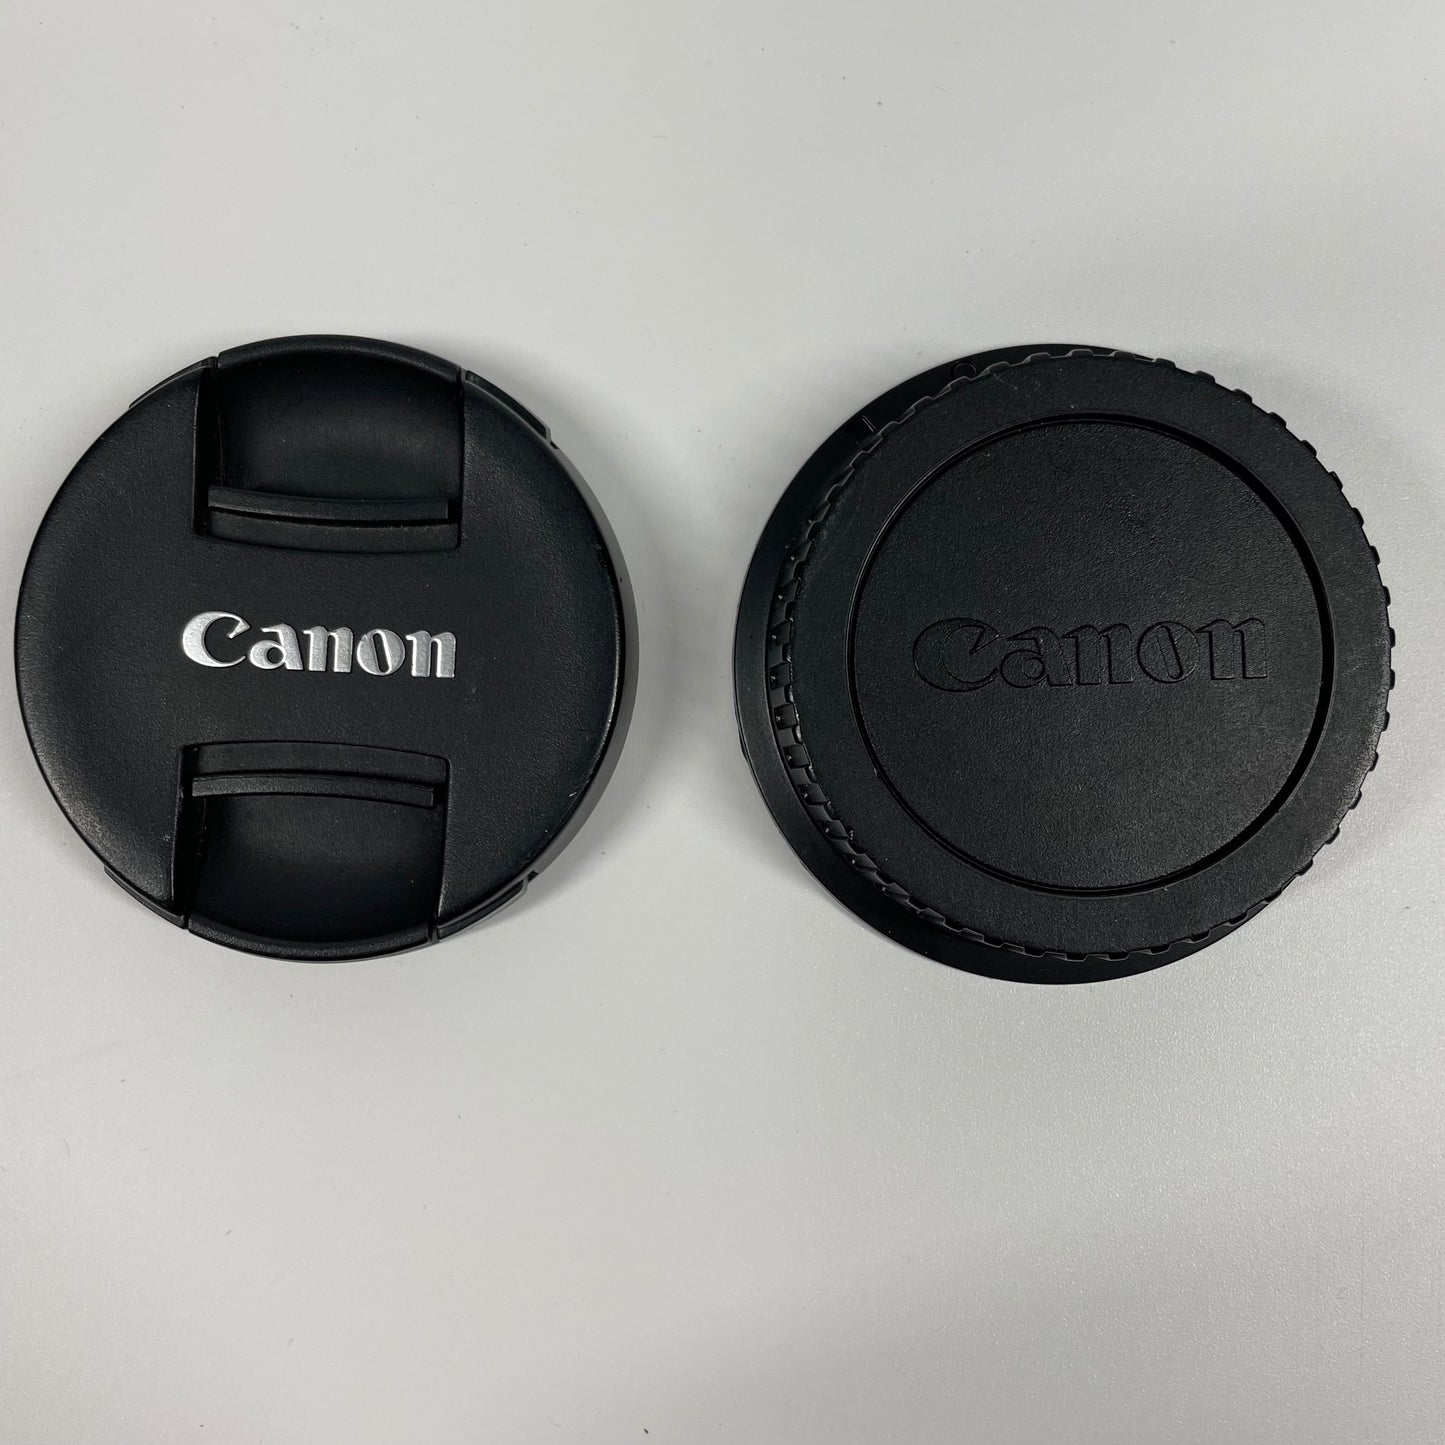 Canon EF-S Macro Lens 18-55mm f/3.5-5.6 IS II